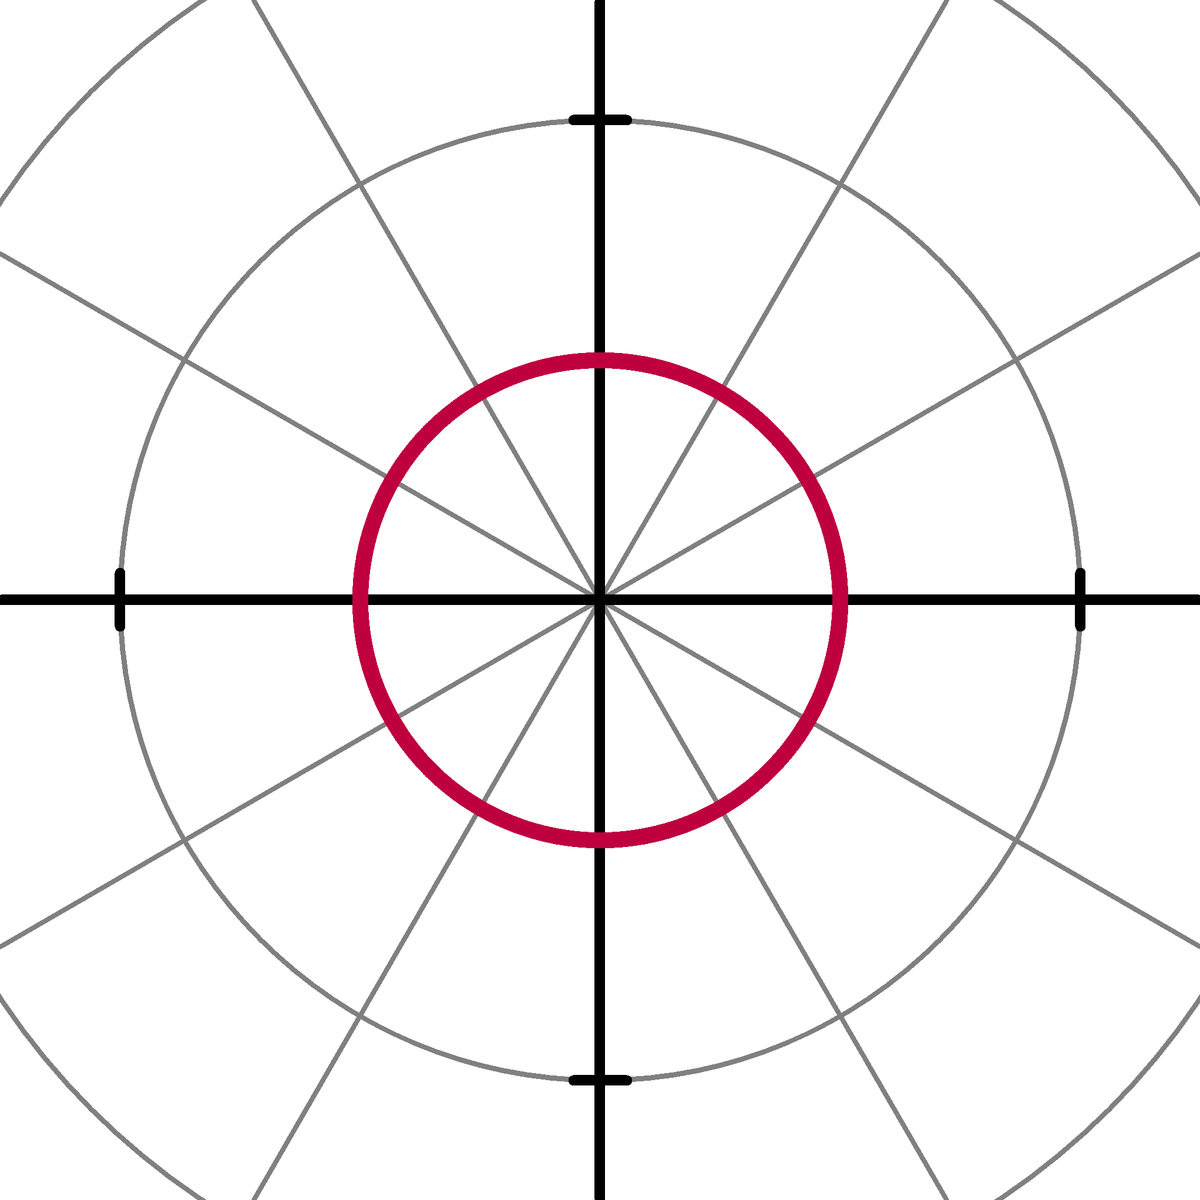 caractère de forme mathématique en demi-cercle, objet drôle